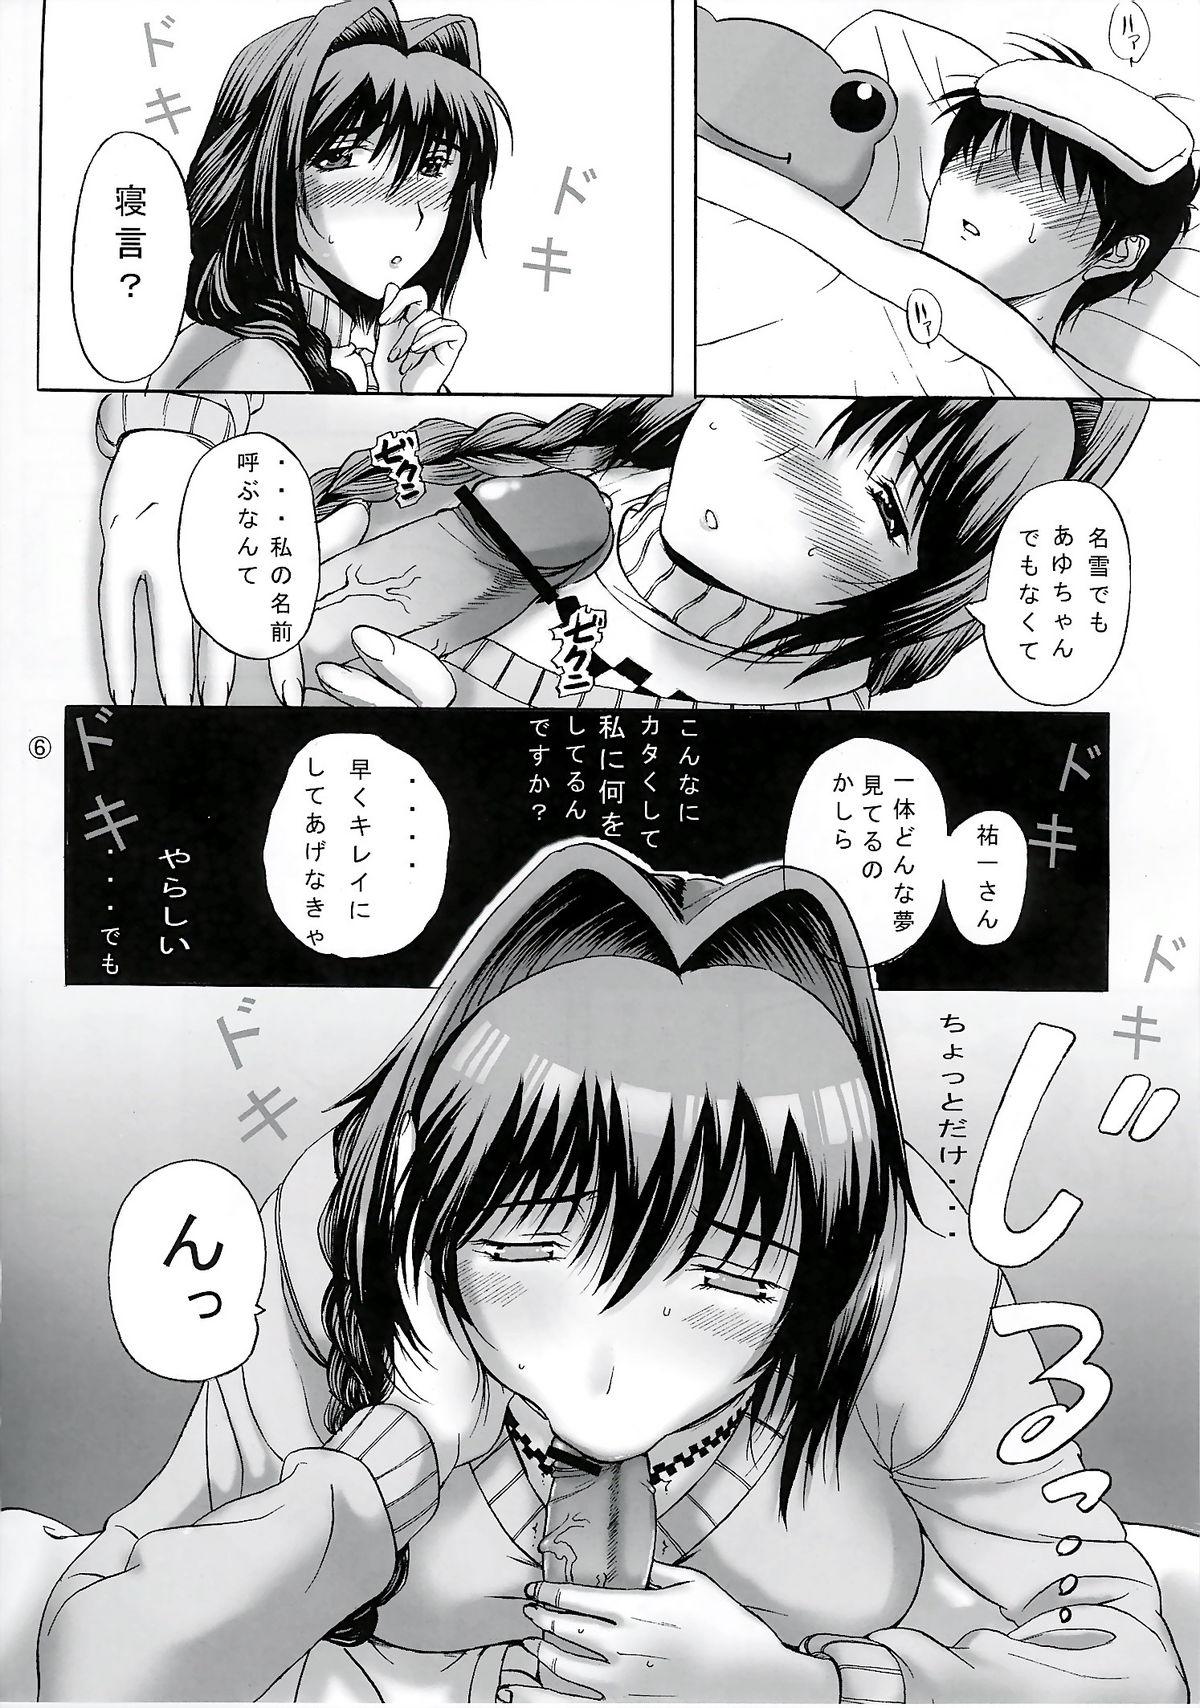 Fun Minase-ke - Kanon Romantic - Page 6